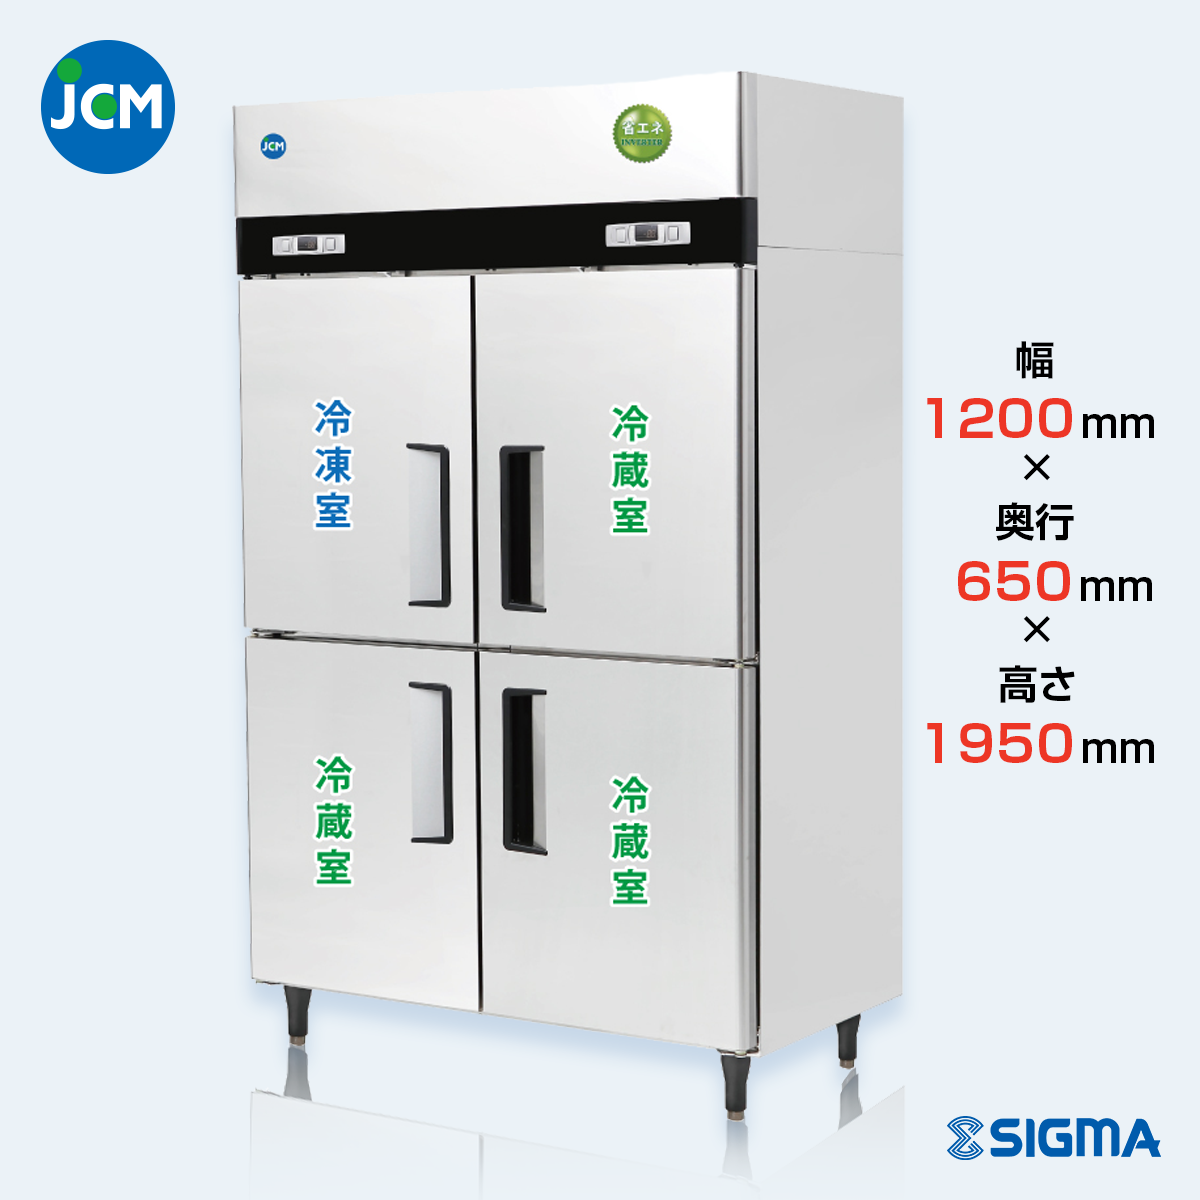 JCMR-1265F1-IN 業務用 縦型冷凍冷蔵庫（冷凍1 冷蔵3）／幅1200×